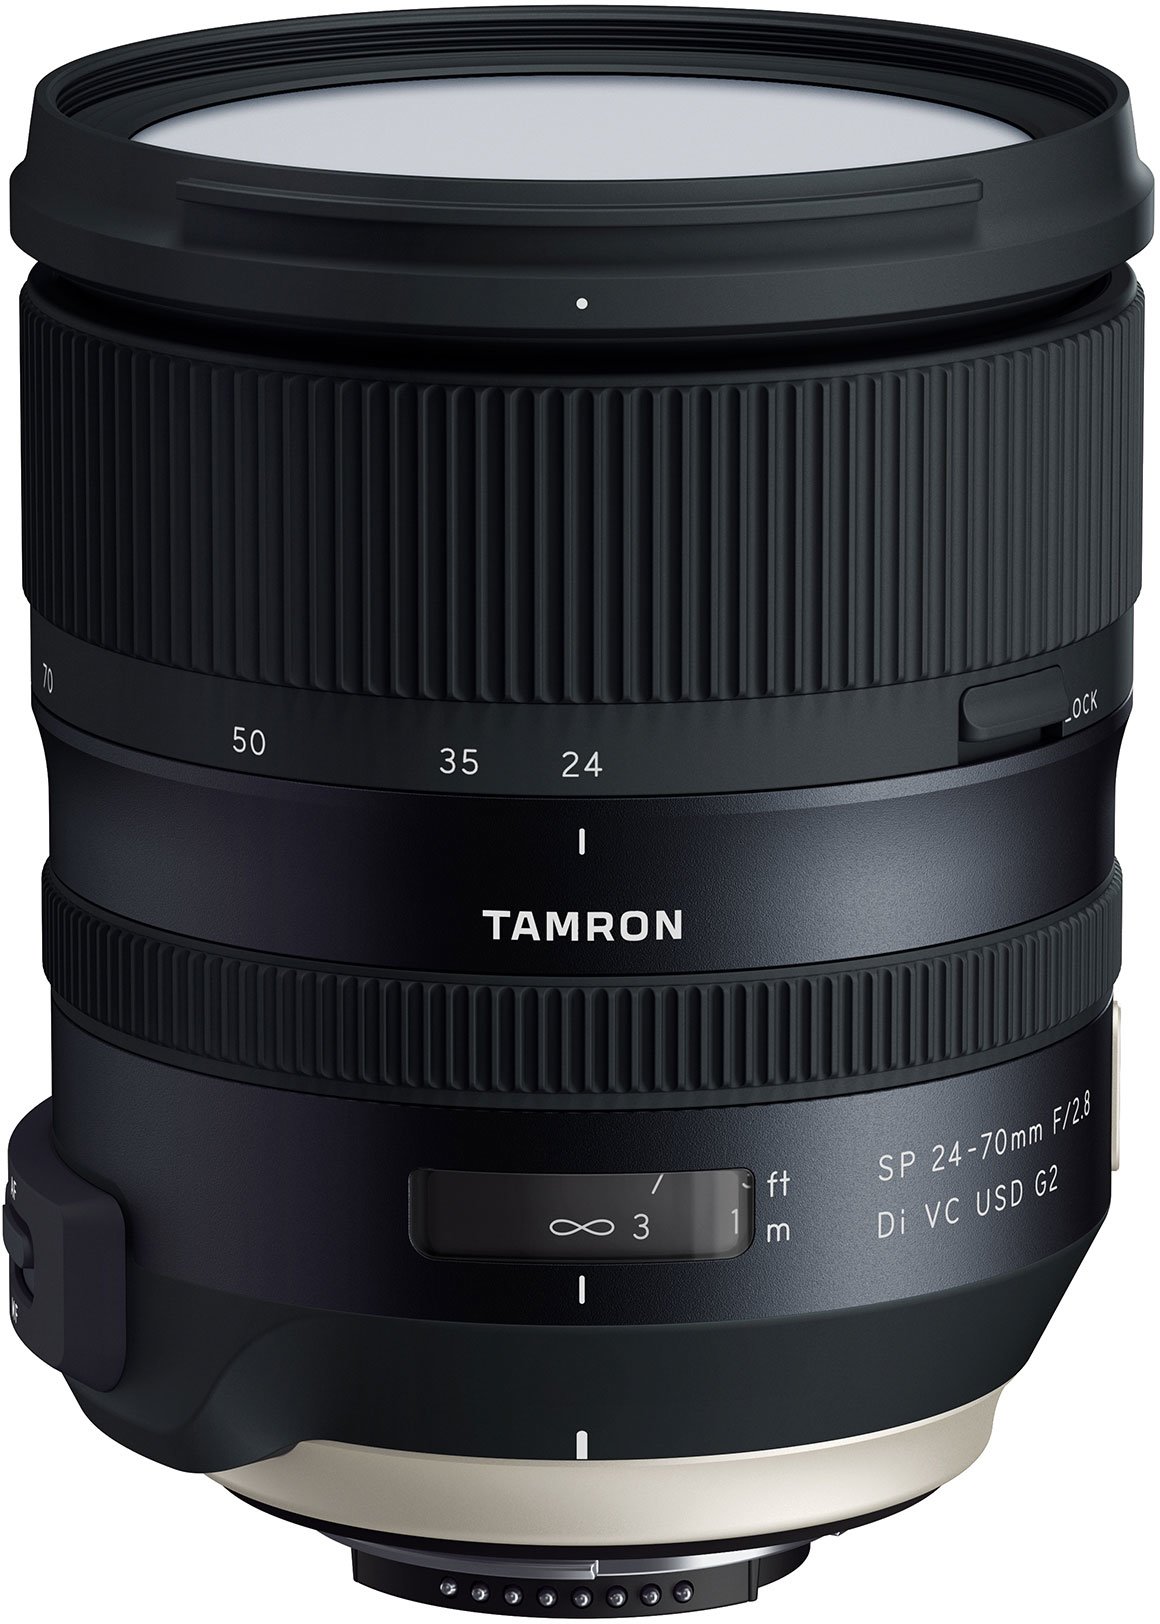 Tamron SP 24-70mm F2.8 Di VC USD G2 Model A032 - Nikon